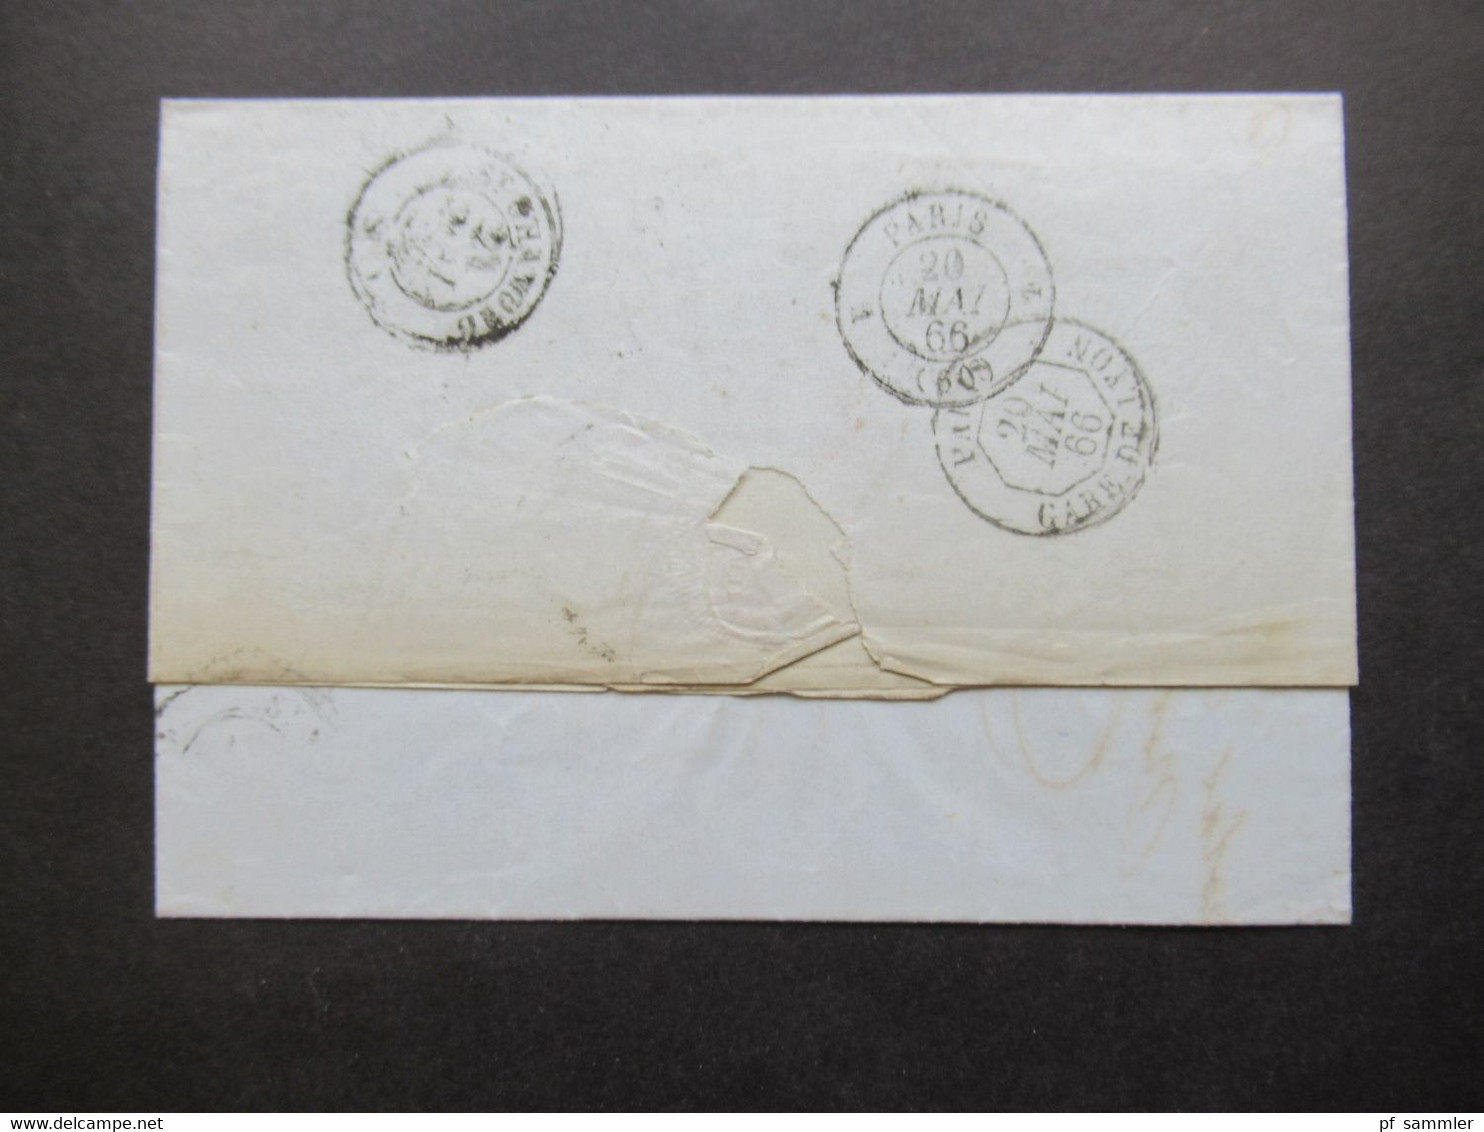 Schweiz 1866 Faltbrief Mit Inhalt PD Brief Basel - Saint Chamond Vorne 4 Stempel / Rückseitig 3 Stempel - Briefe U. Dokumente